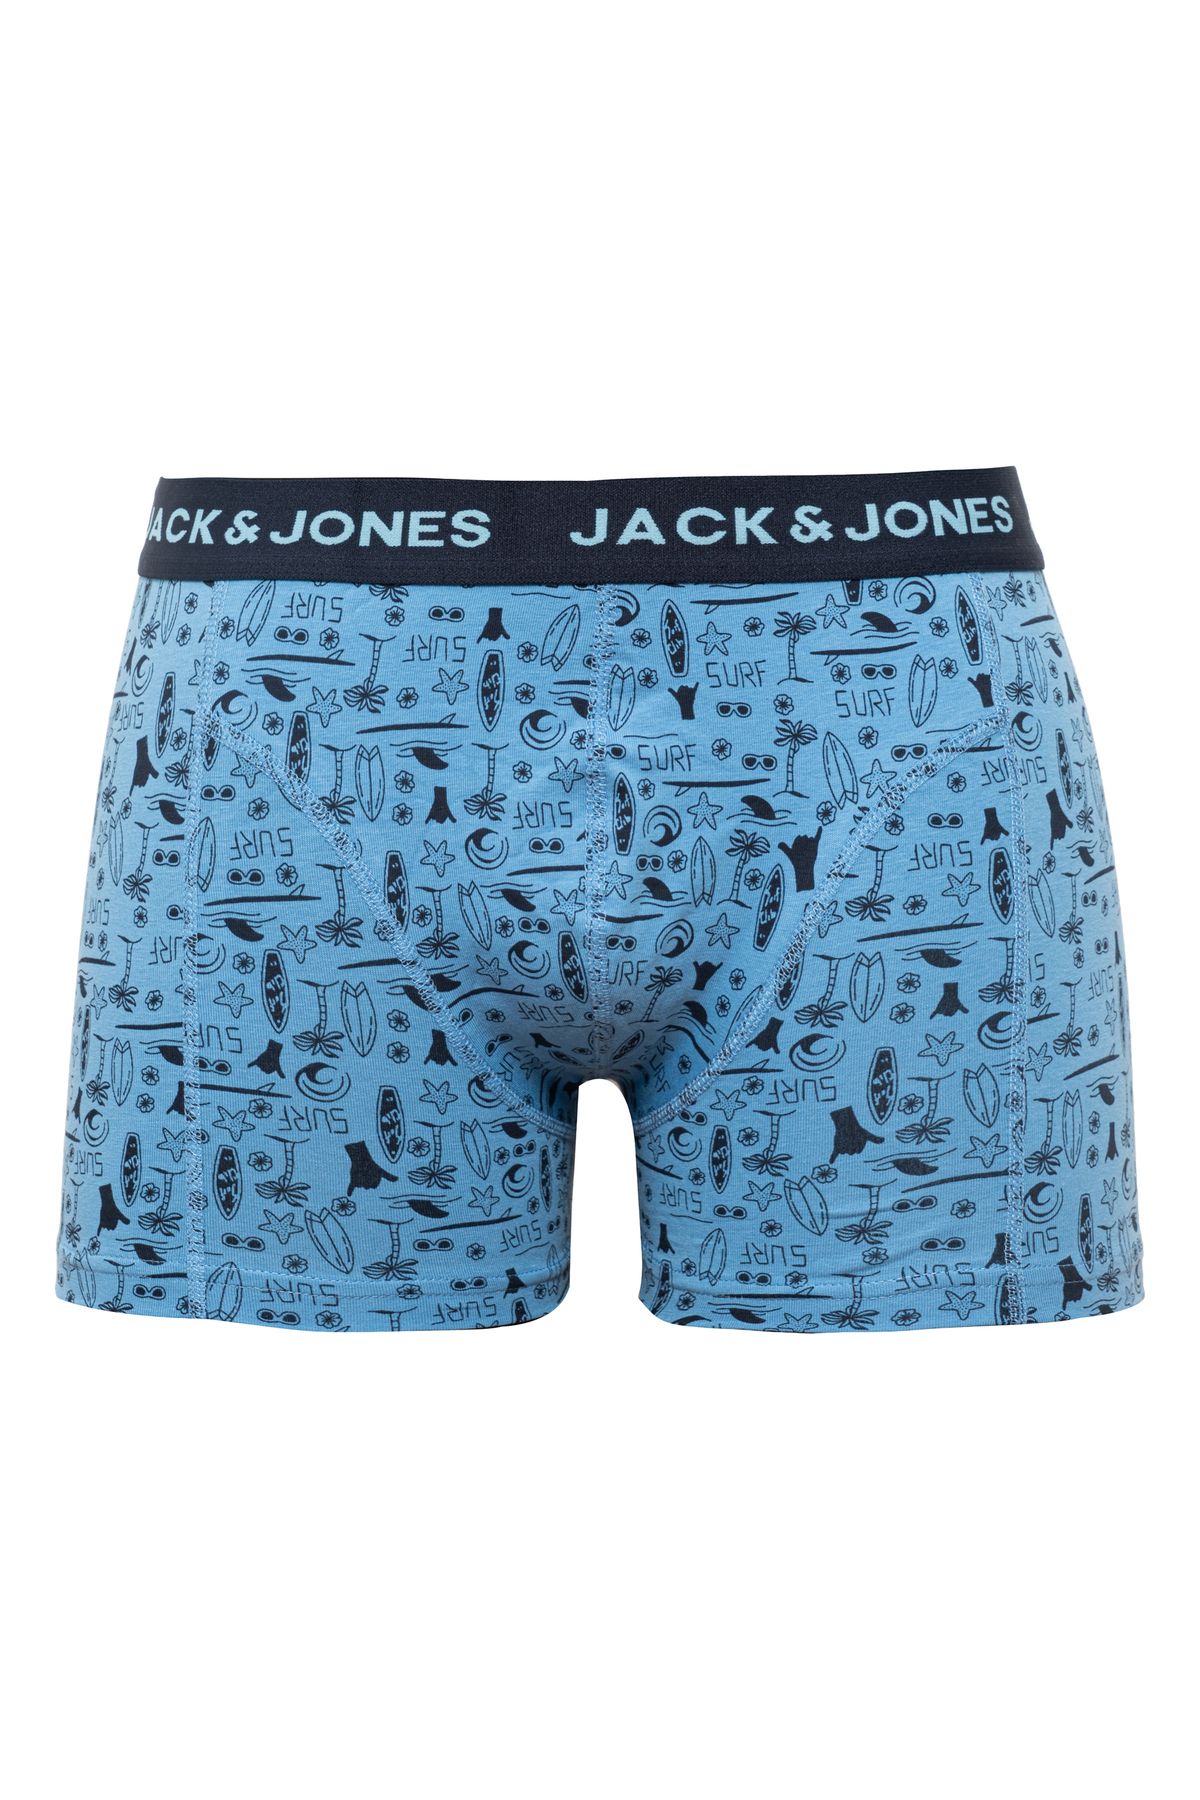 Jack & Jones Tekli Logo Desenli Boxer - Kyle